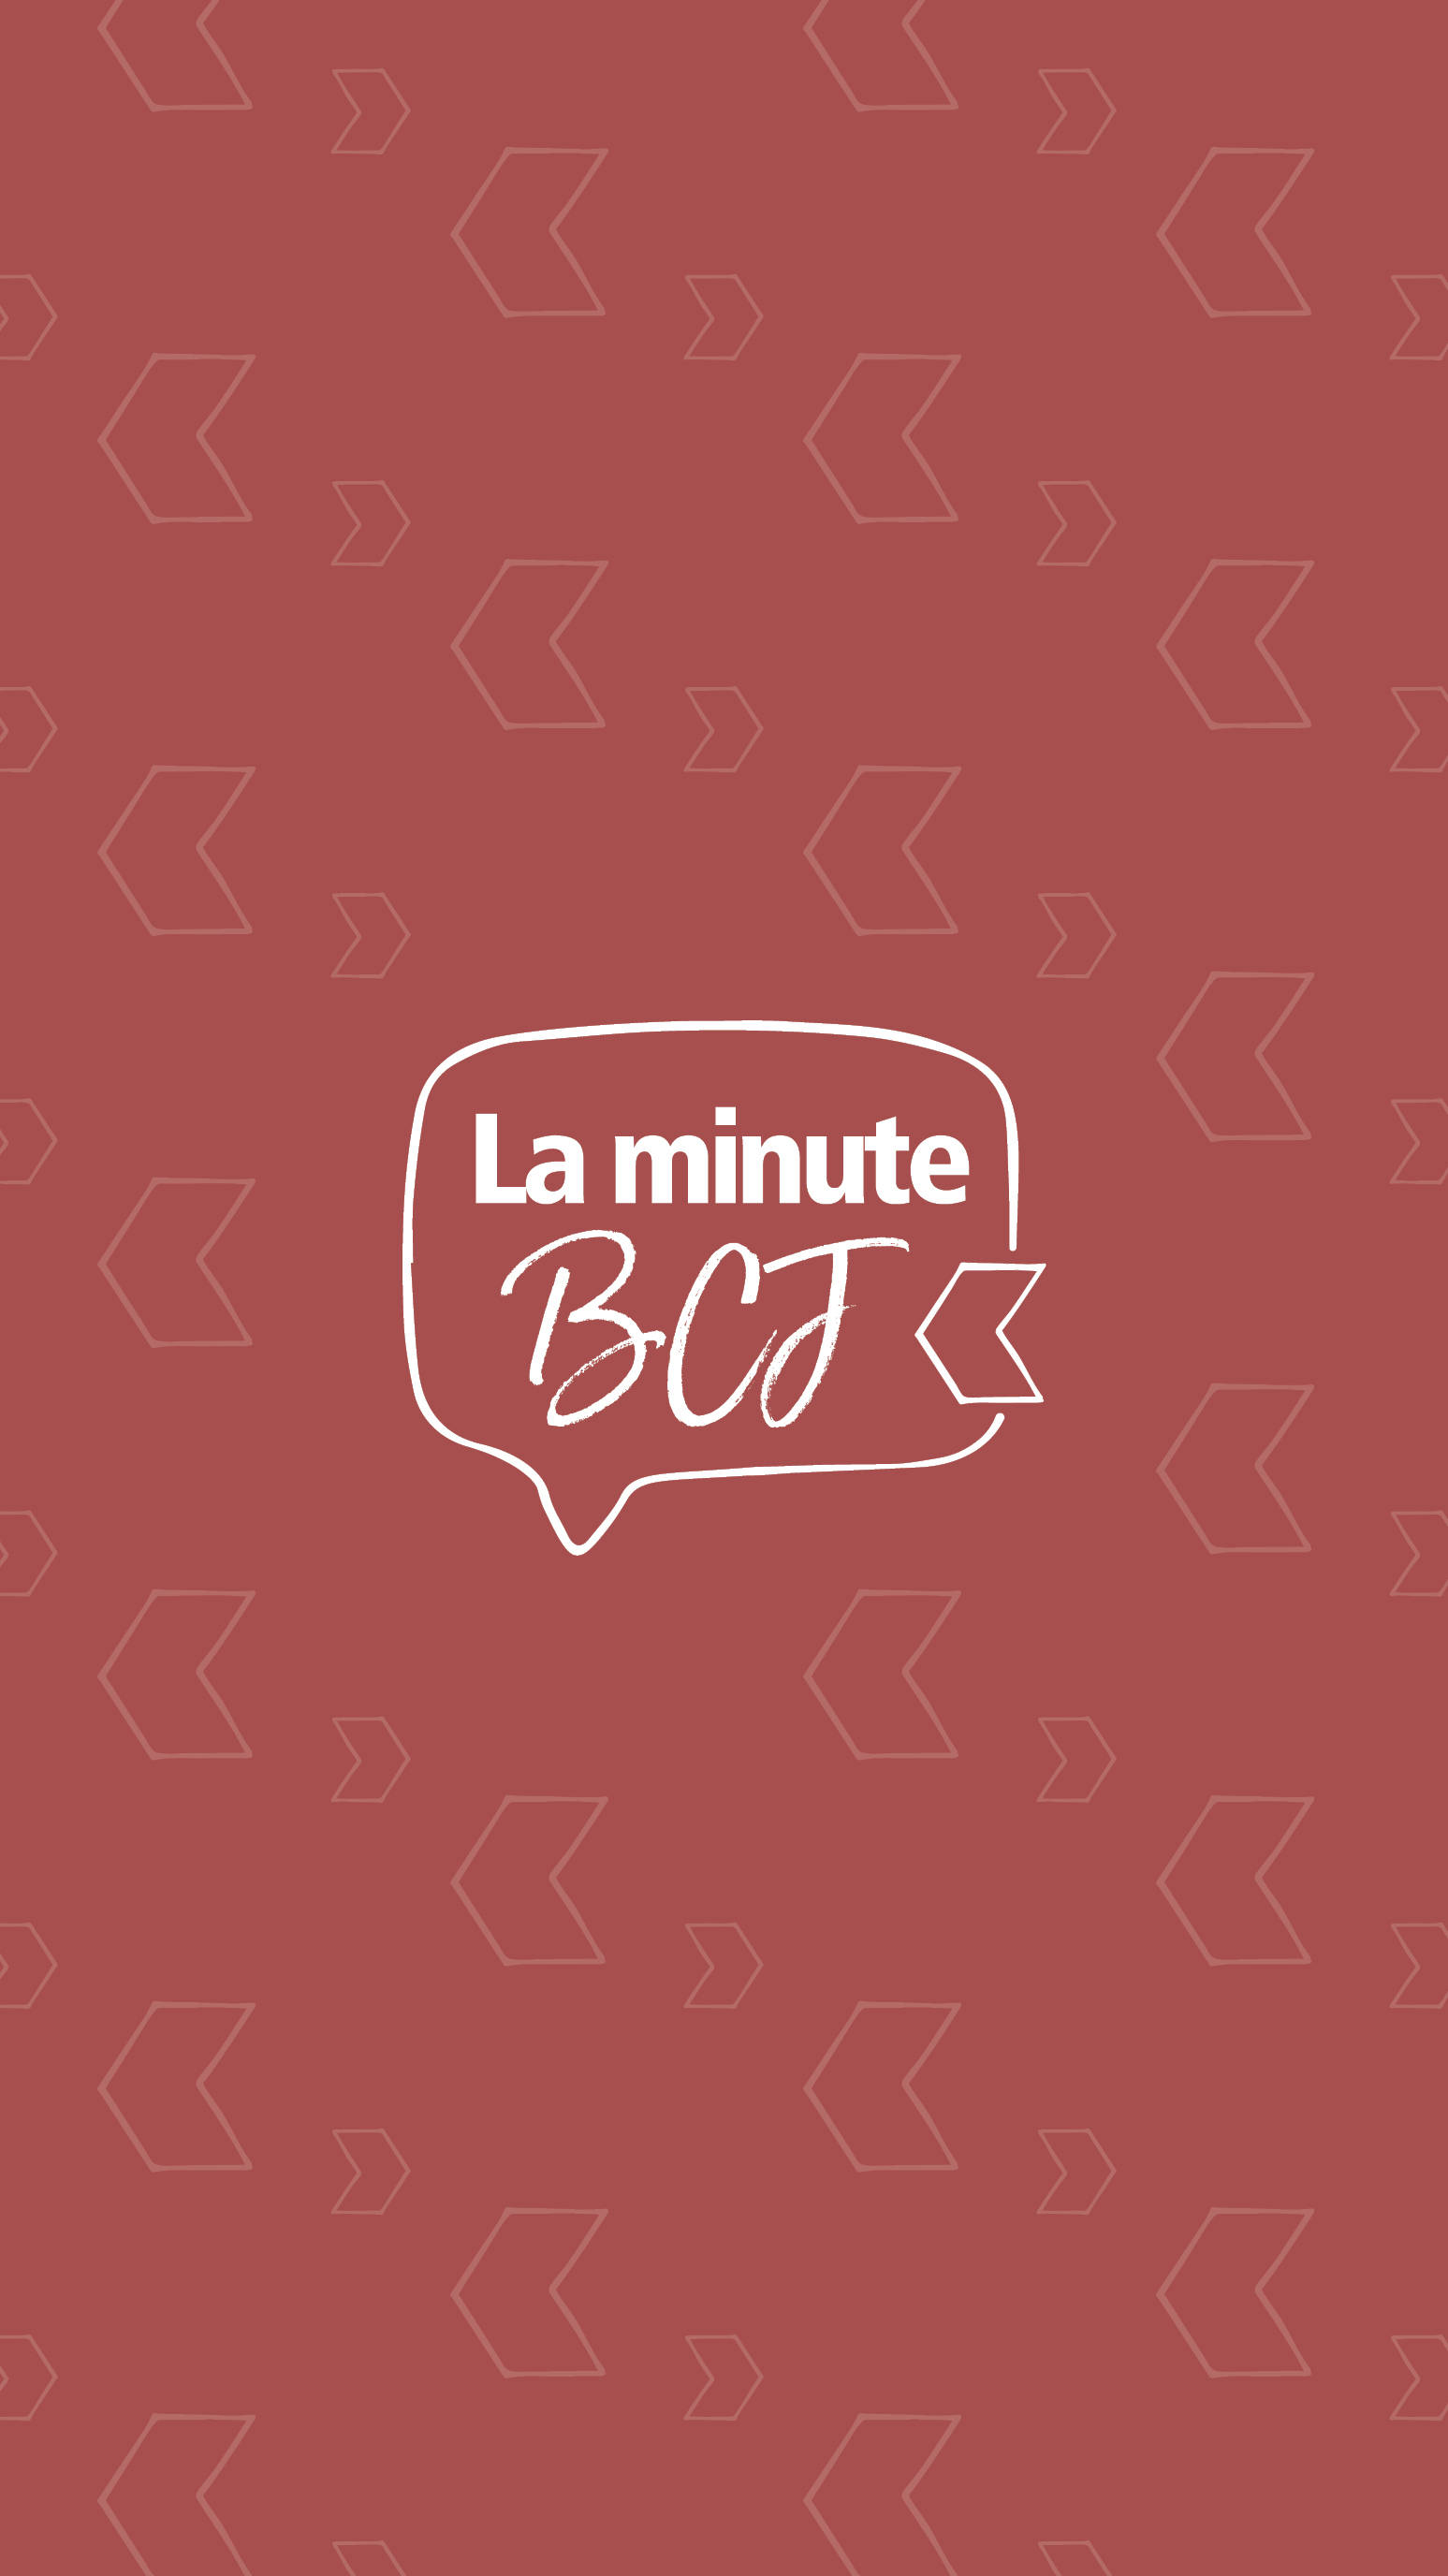 La minute BCJ